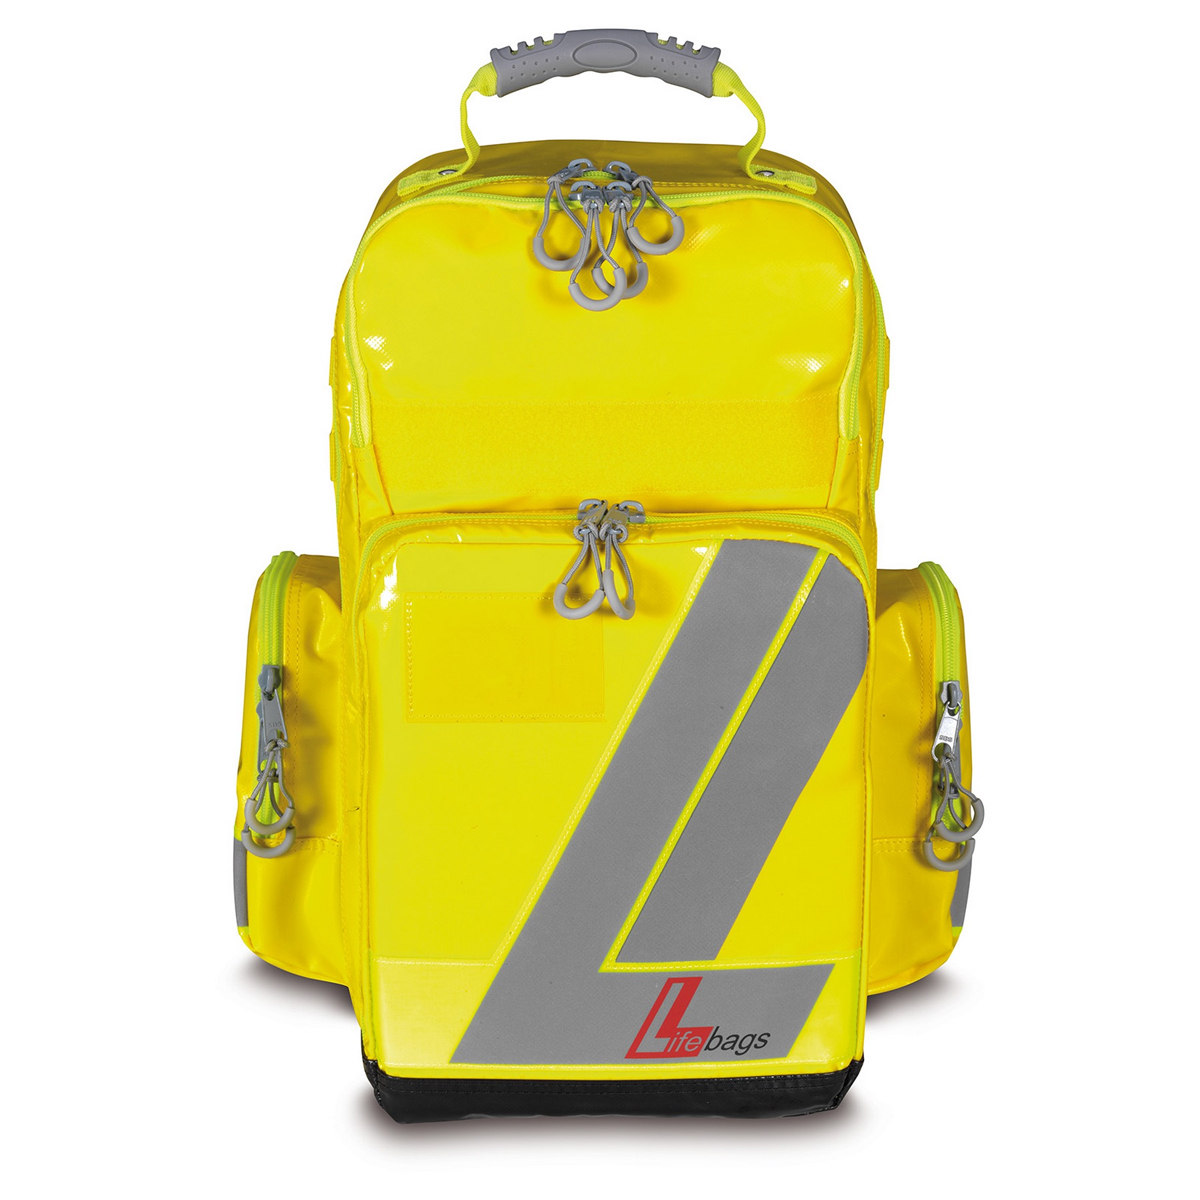 LifeBags® Notfalltasche Medium aus BagsTEX-Plane, Farbe: Blau